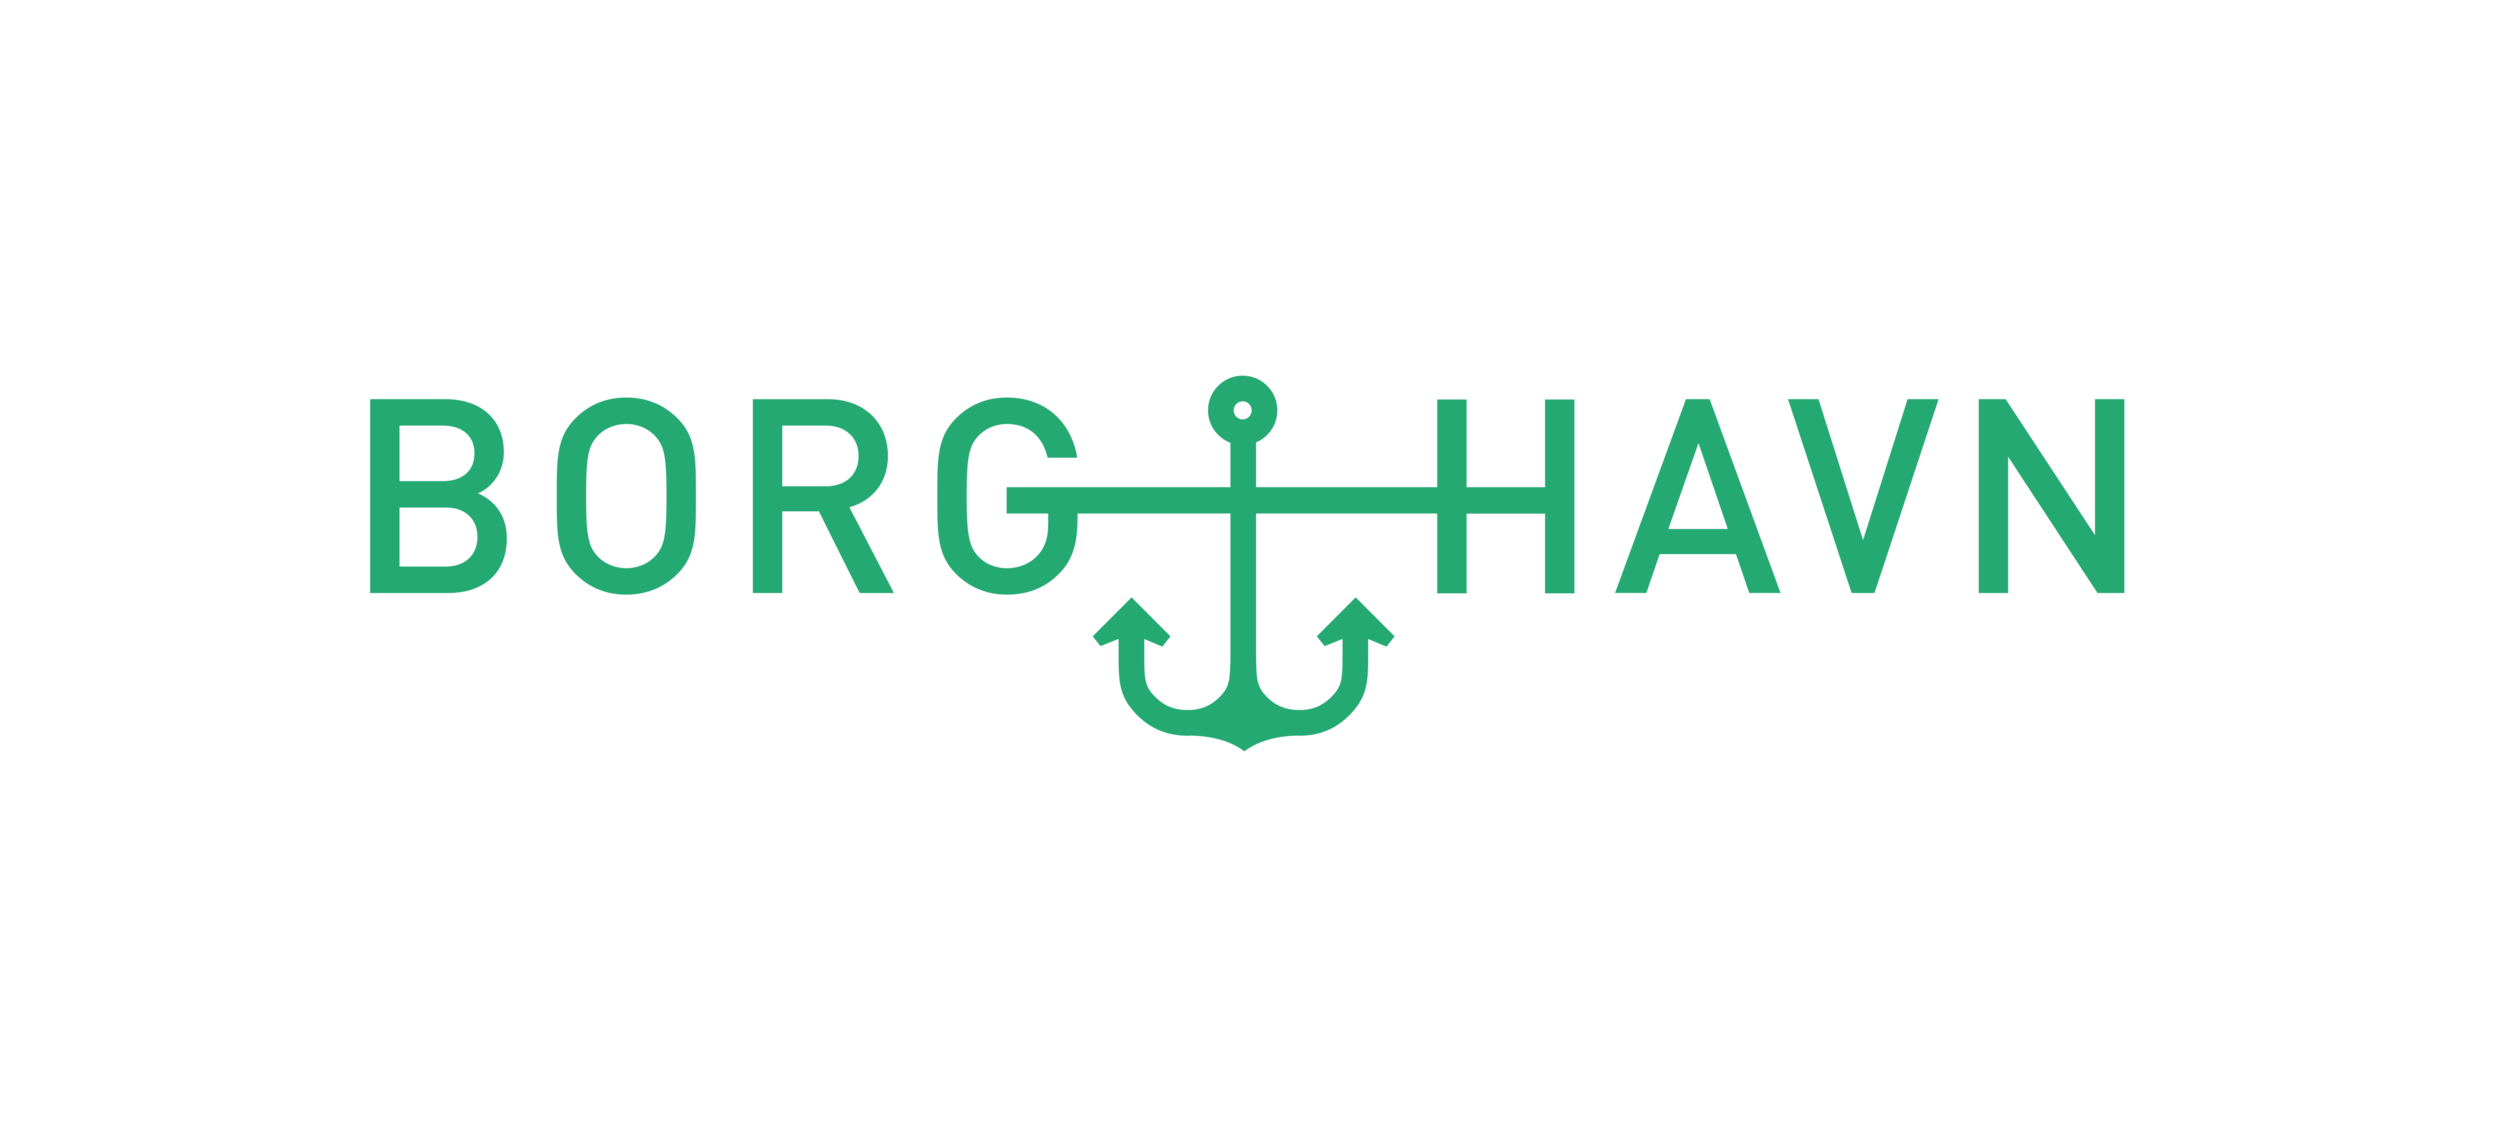 Borg_Havn logo_grønn.png